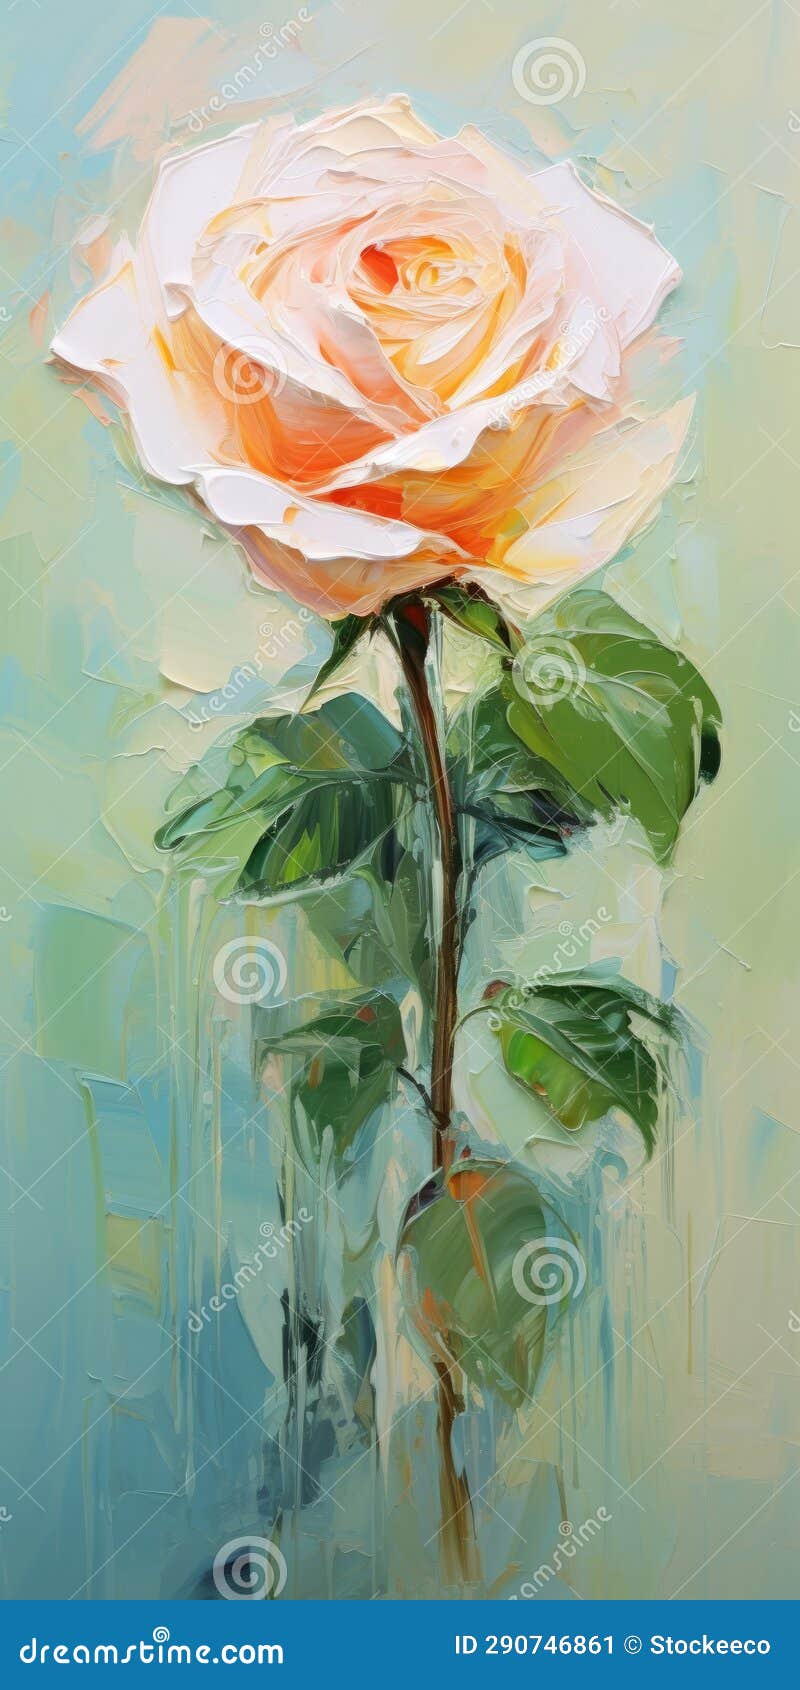 emerald and beige: romantic orange rose oil painting